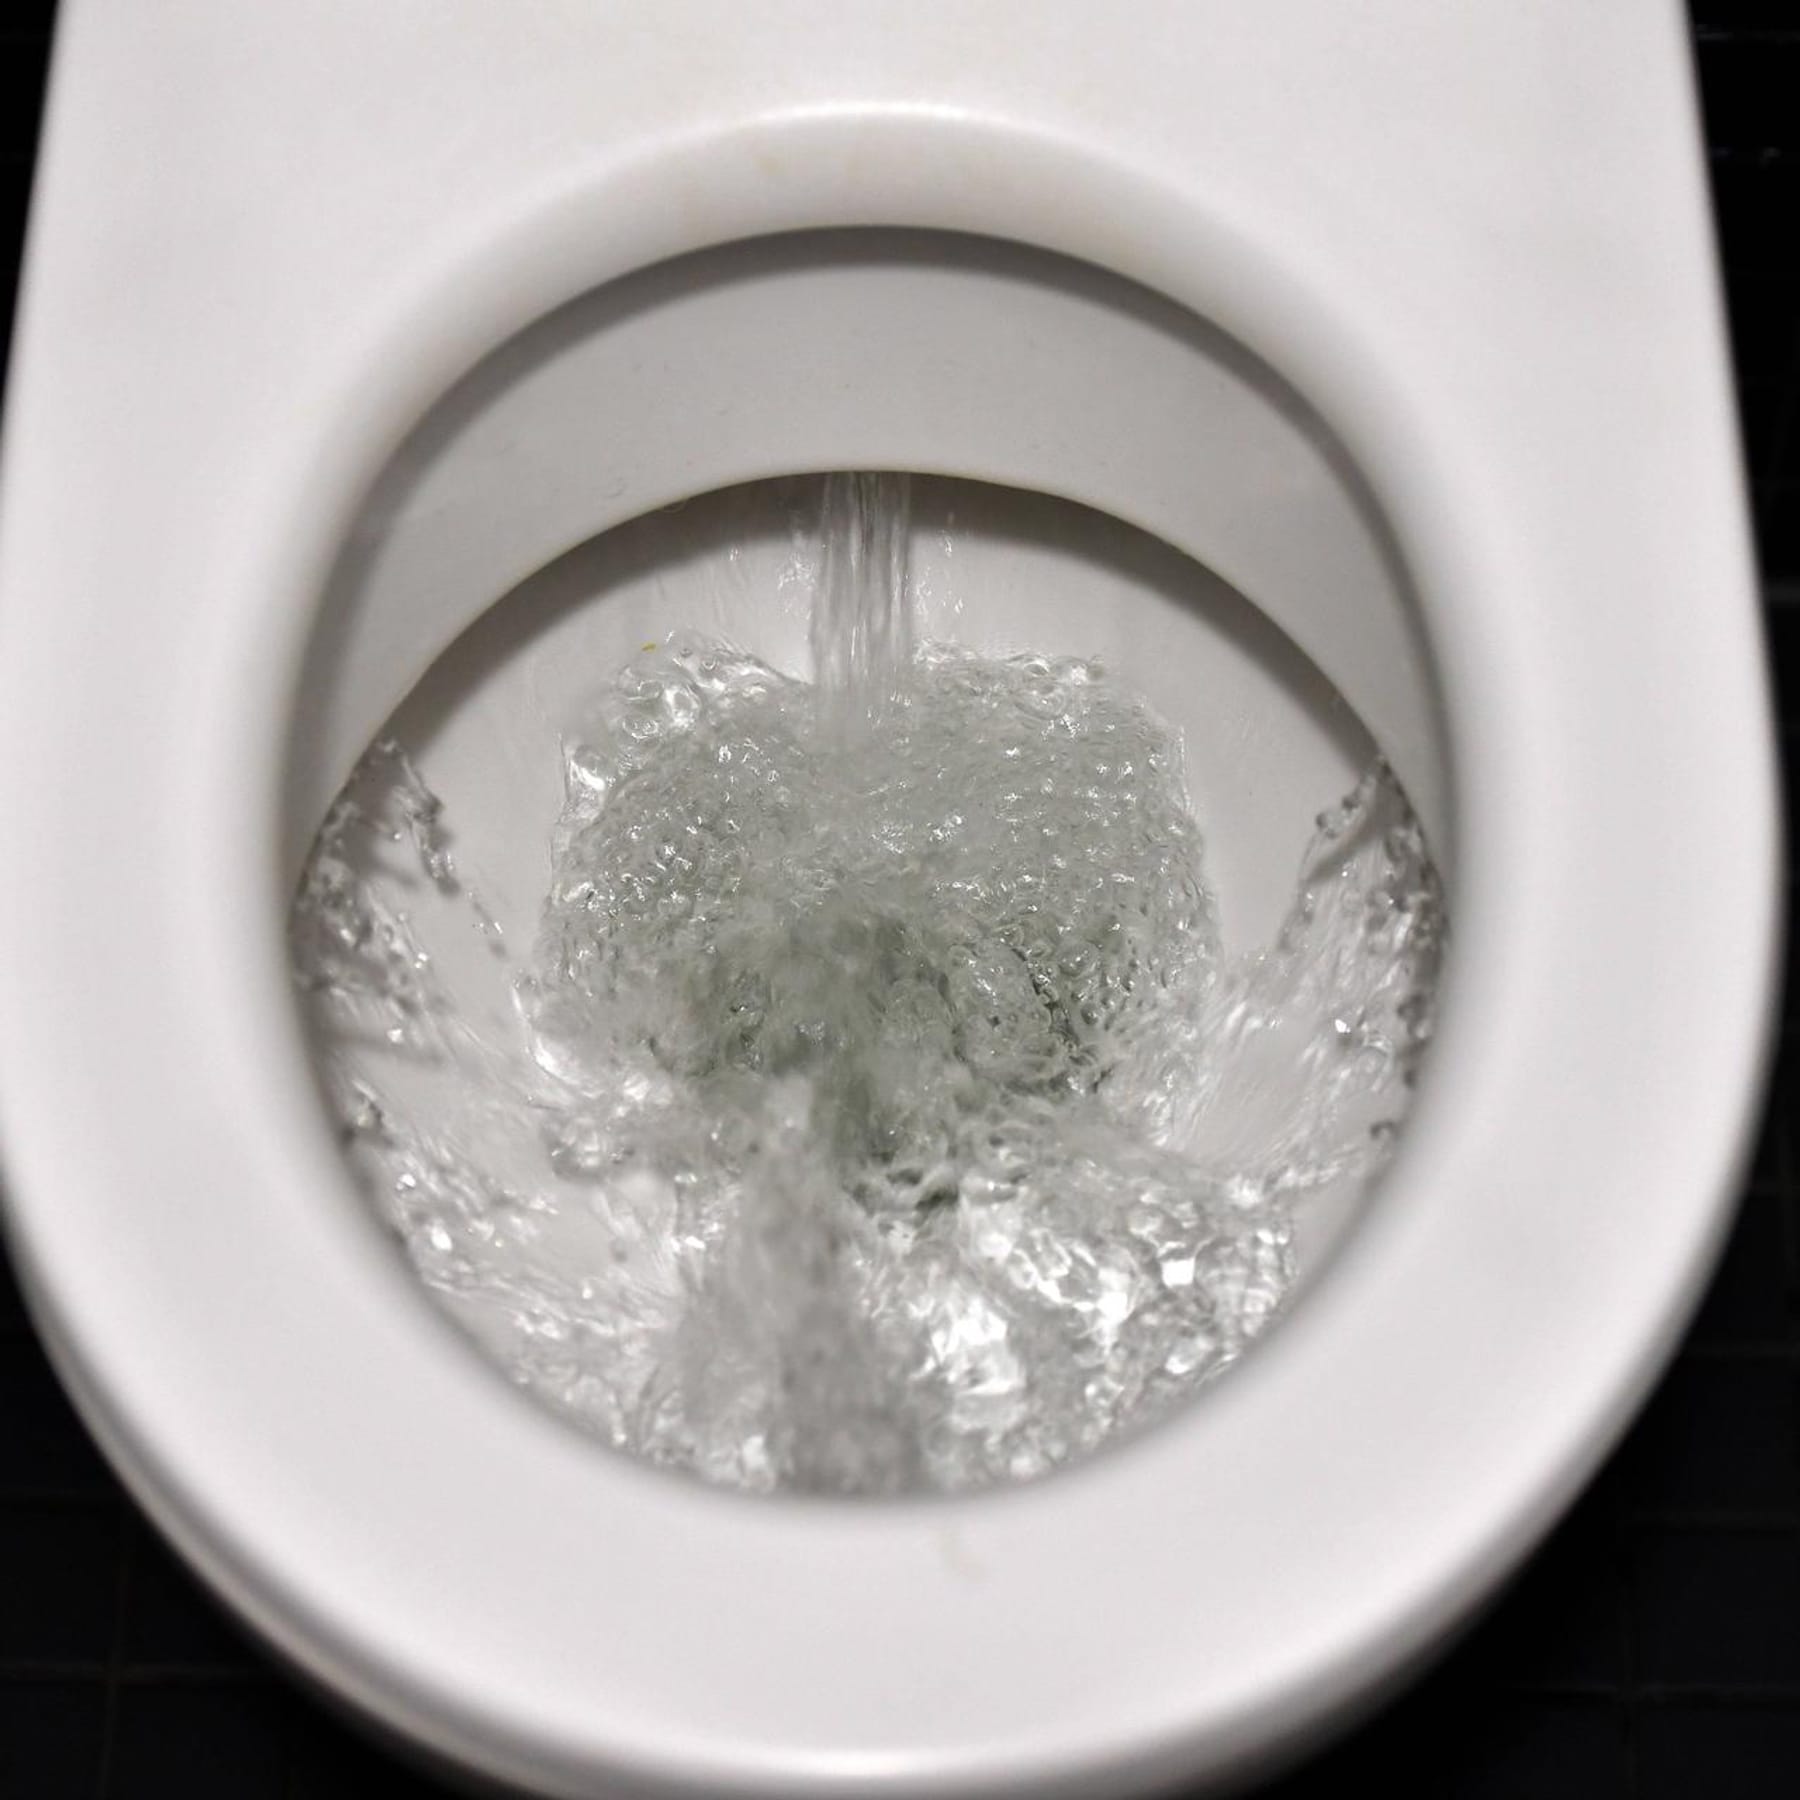 Toilette reinigen: Braune Ablagerungen, Urinstein und Kalk einfach entfernen